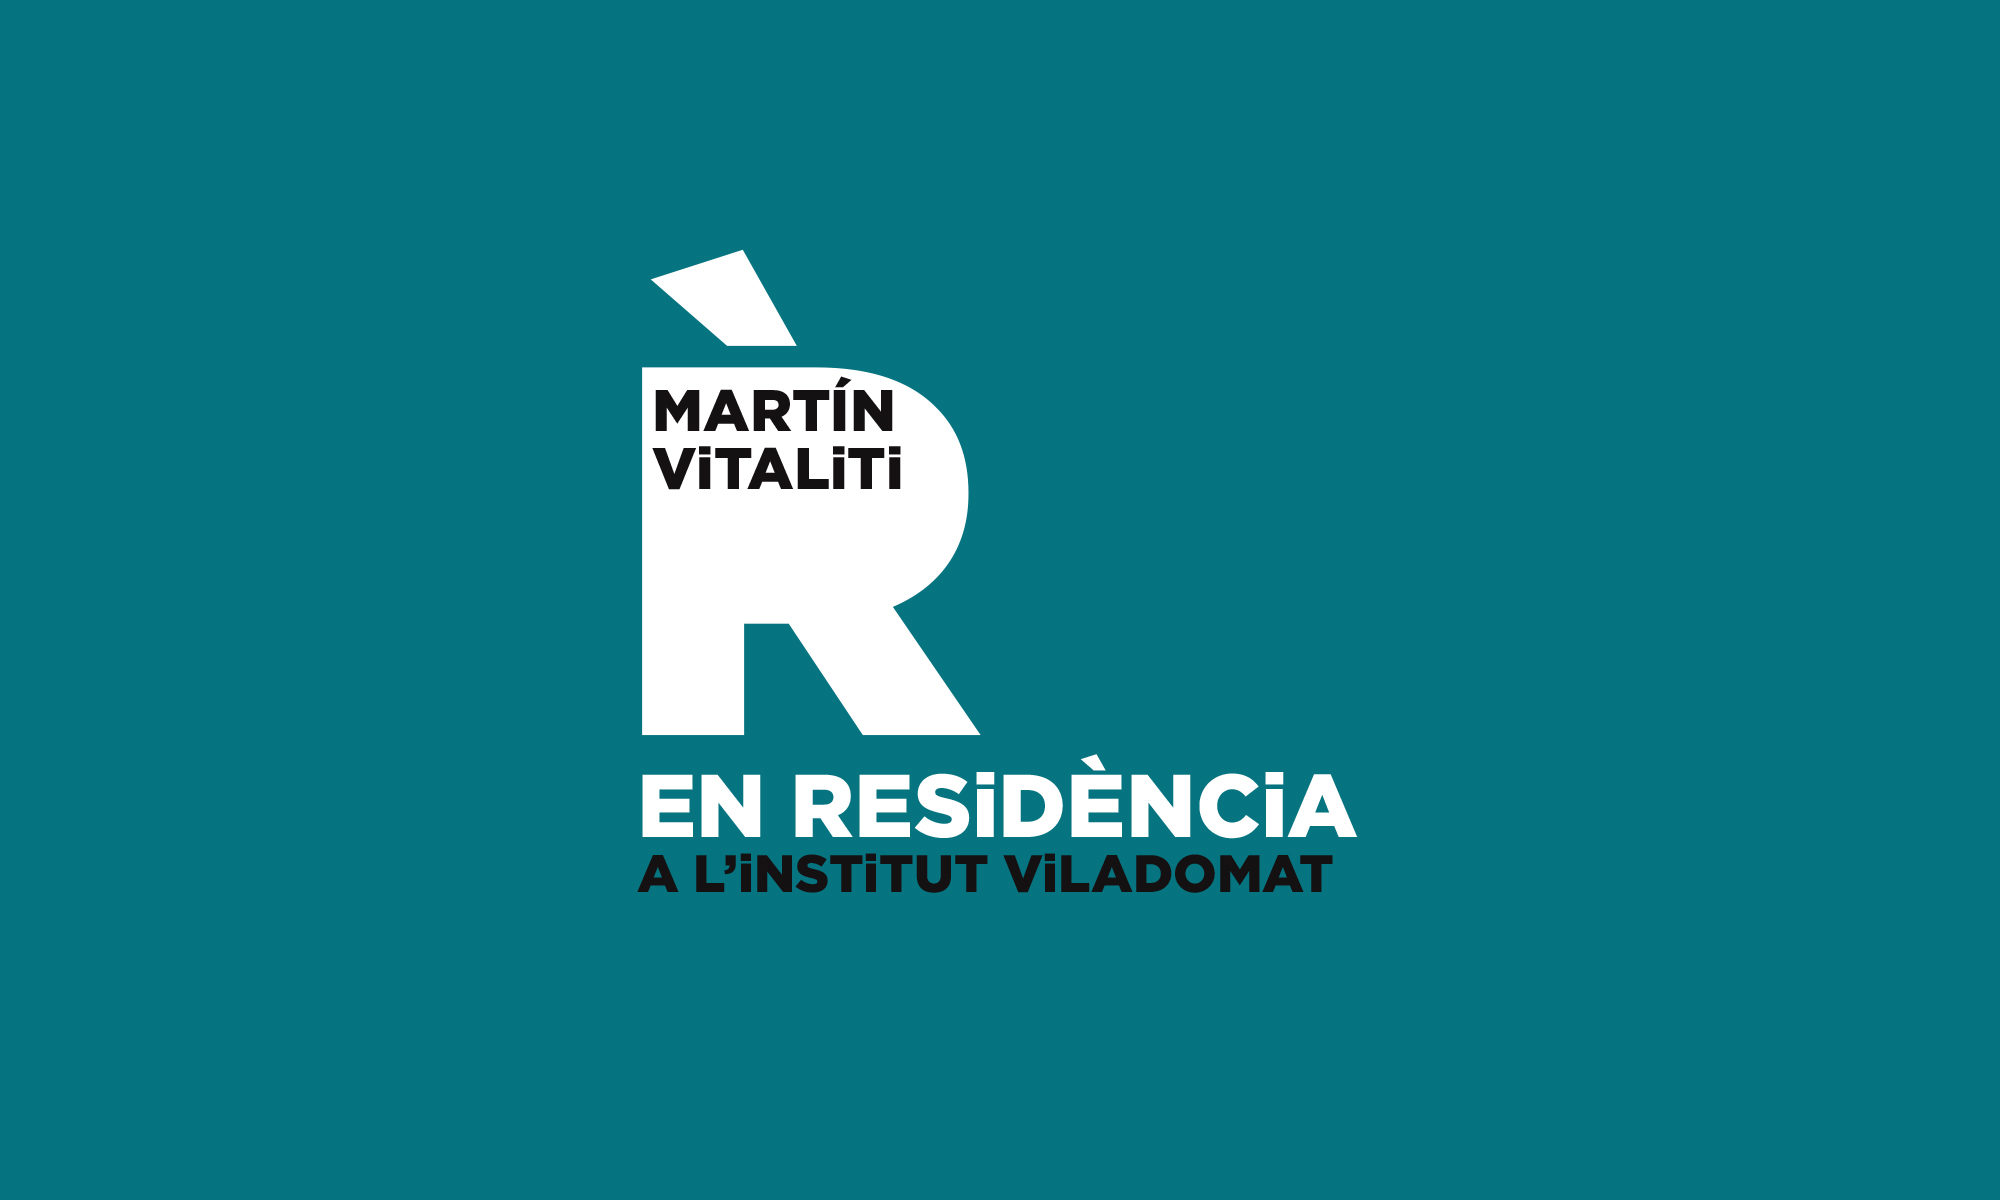 Martín Vitaliti EN RESIDÈNCIA